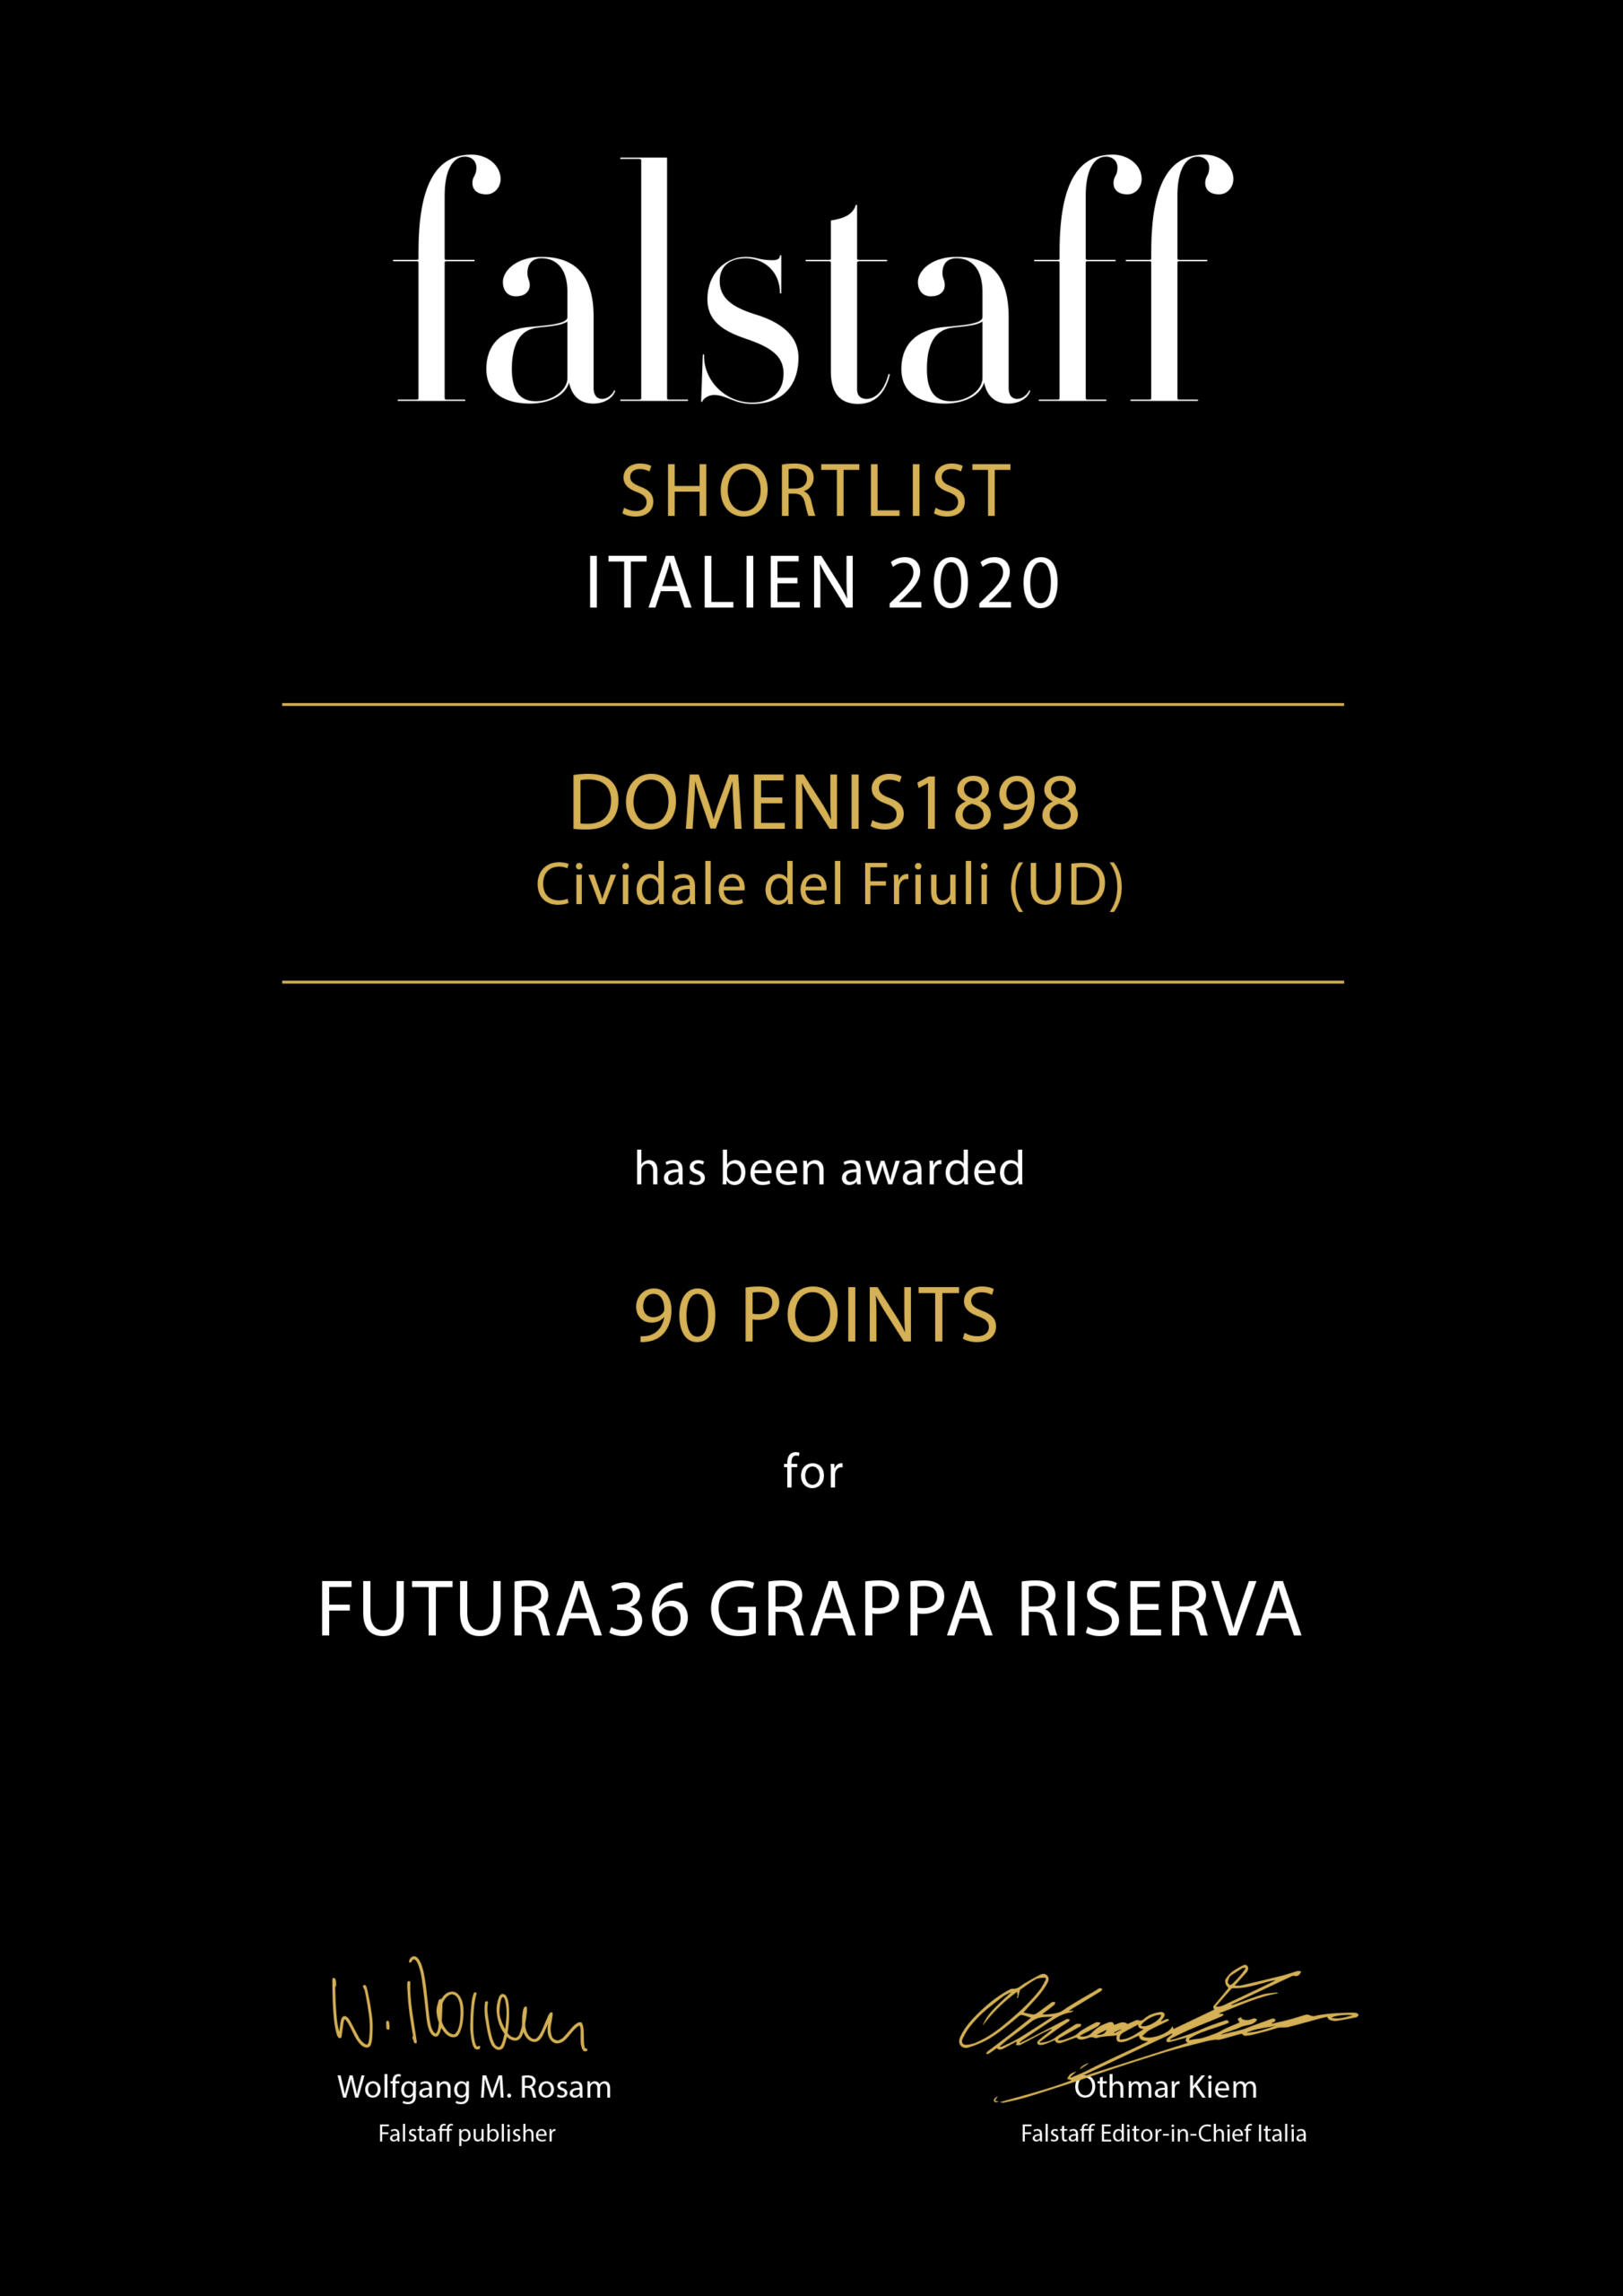 Falstaff Shortlist Italien 2020 – Futura36